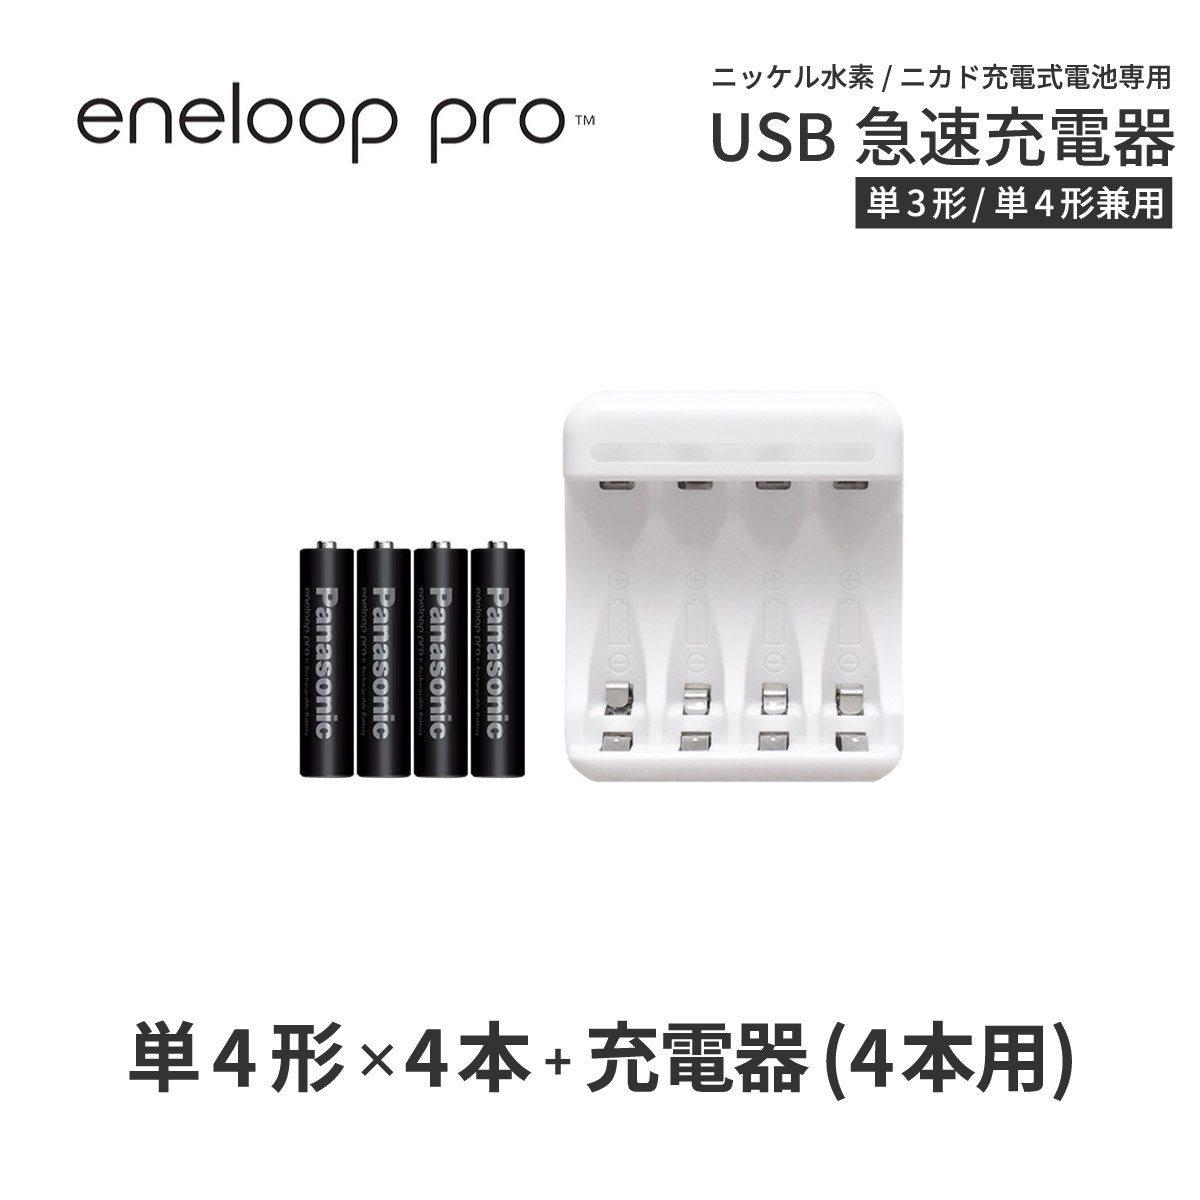 エネループ プロ eneloop pro 単4 充電池 充電器 充電器セット単4形 4本とUSB充電器のセット USB 急速充電器 ニッケル水素電池 充電池 単4ネコポス送料無料